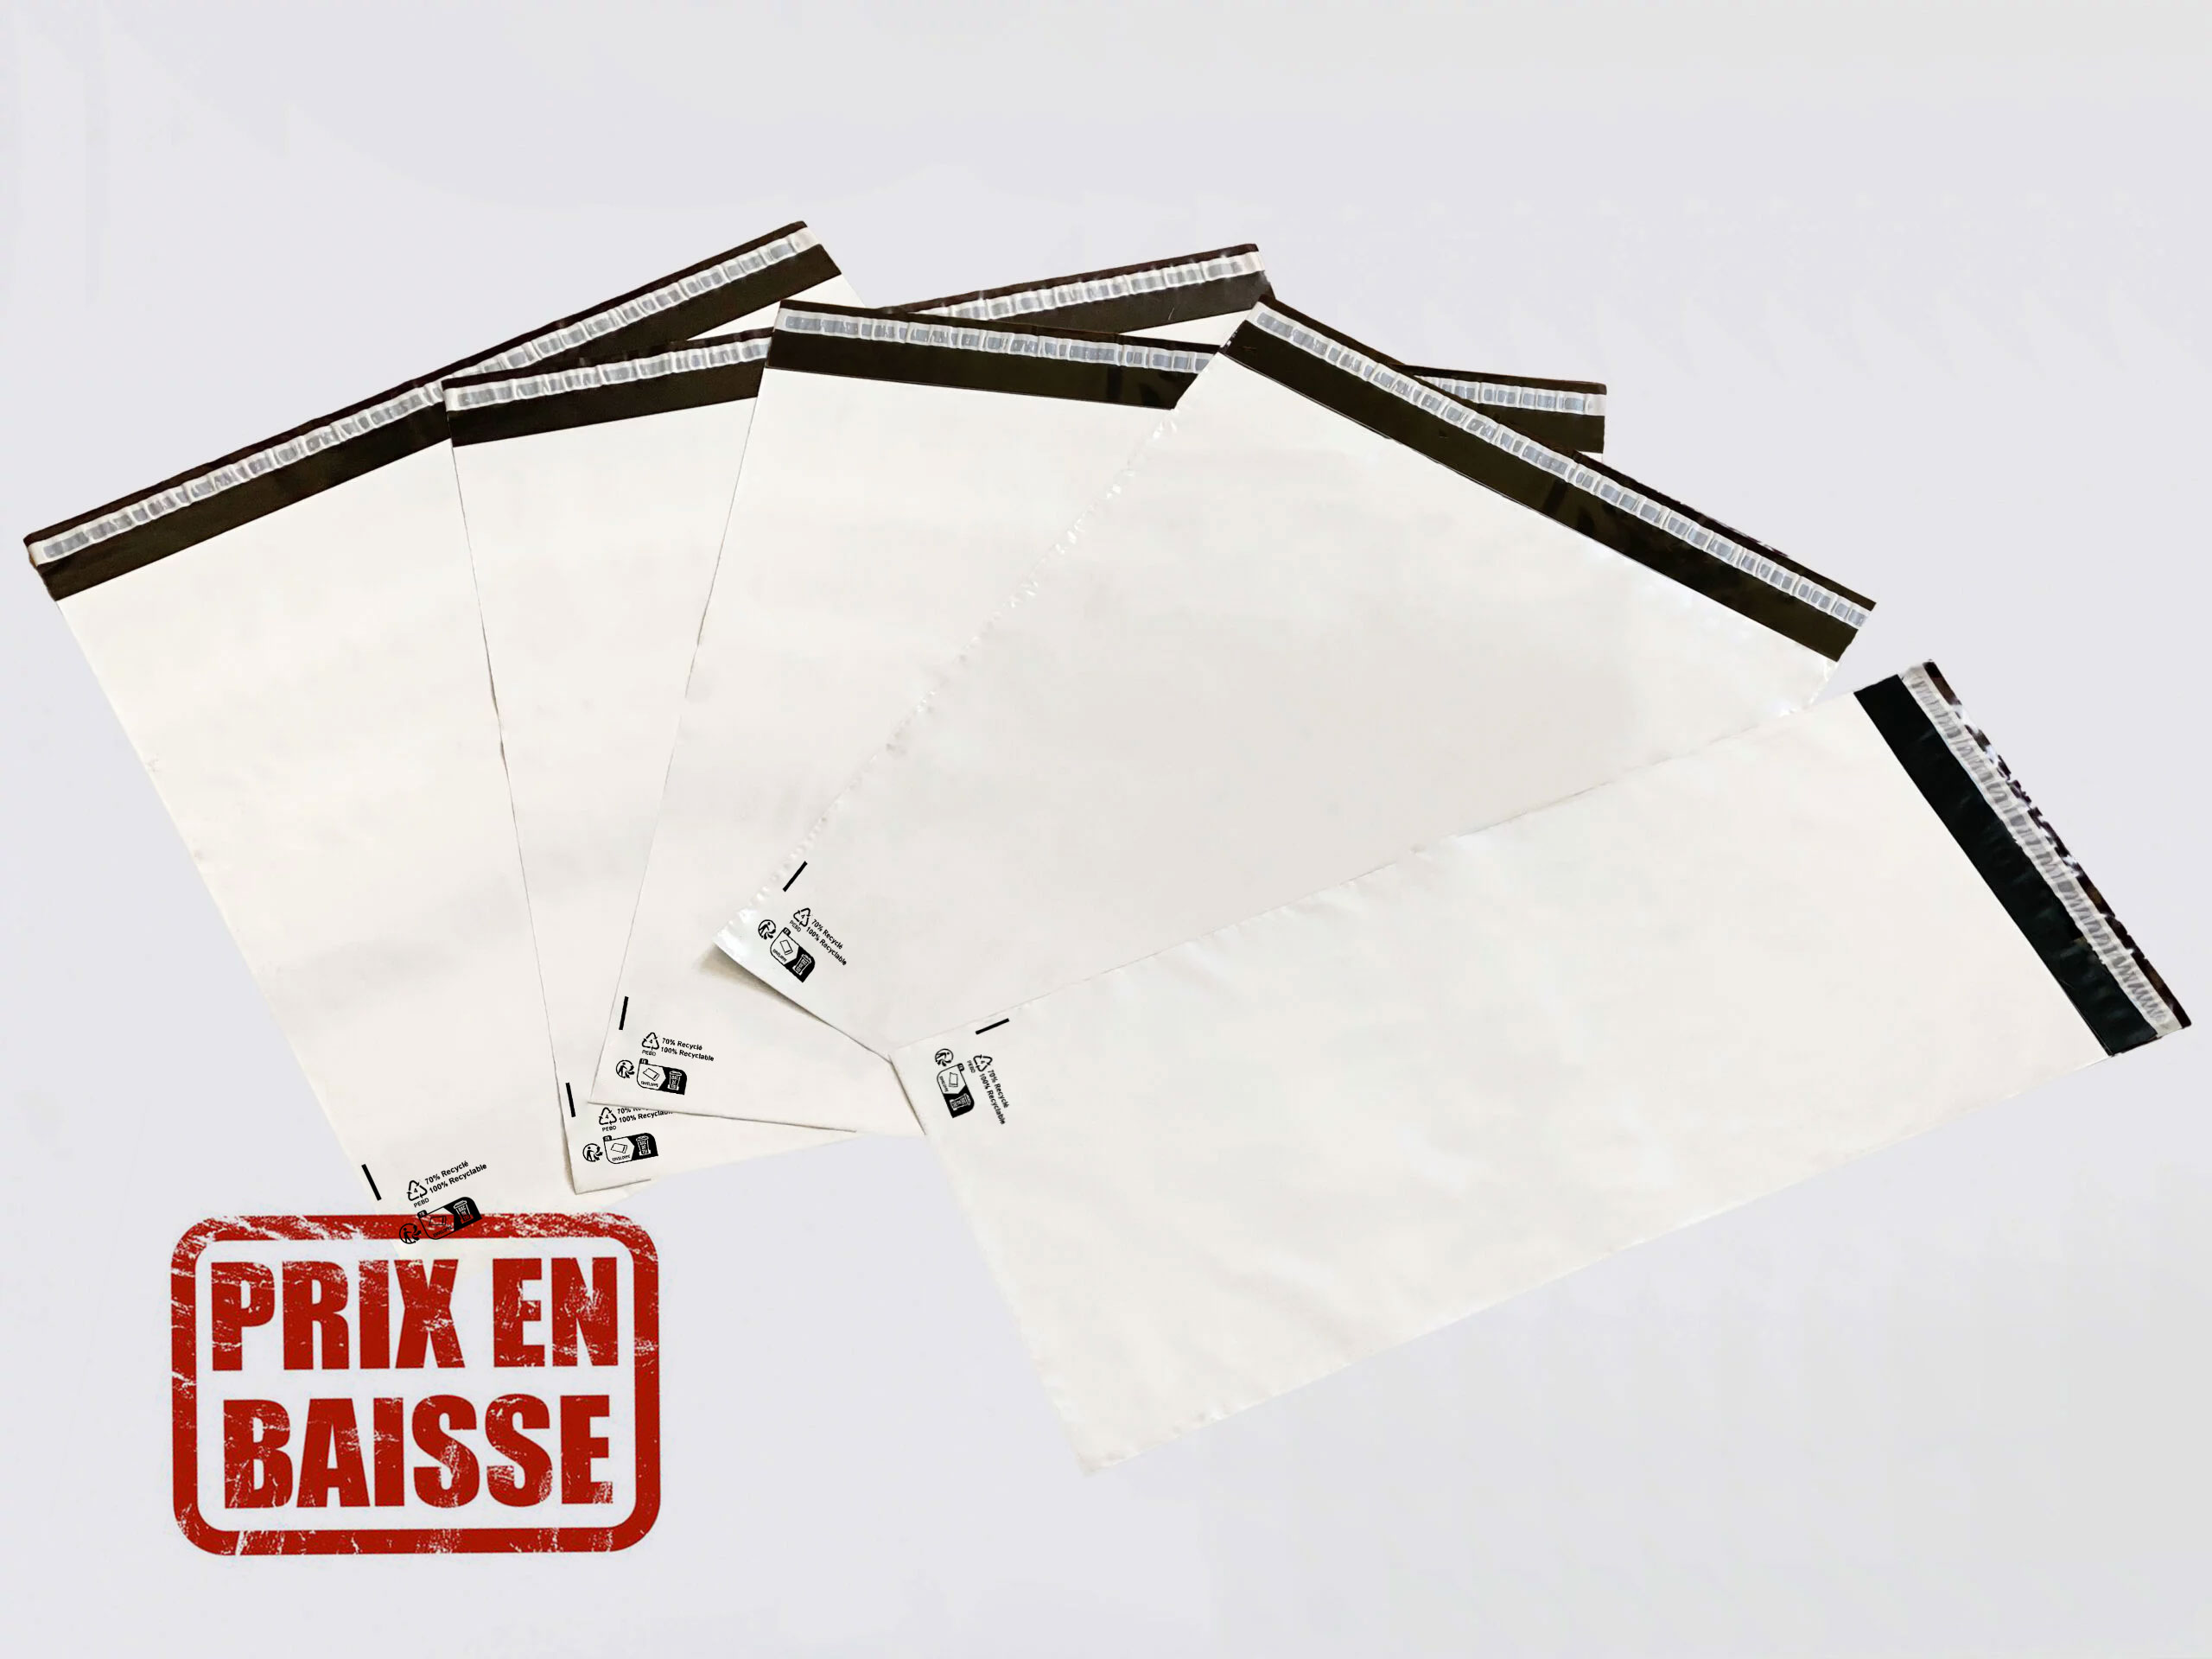 50x Enveloppes Plastique Expedition RÉUTILISABLE 100% Recyclée